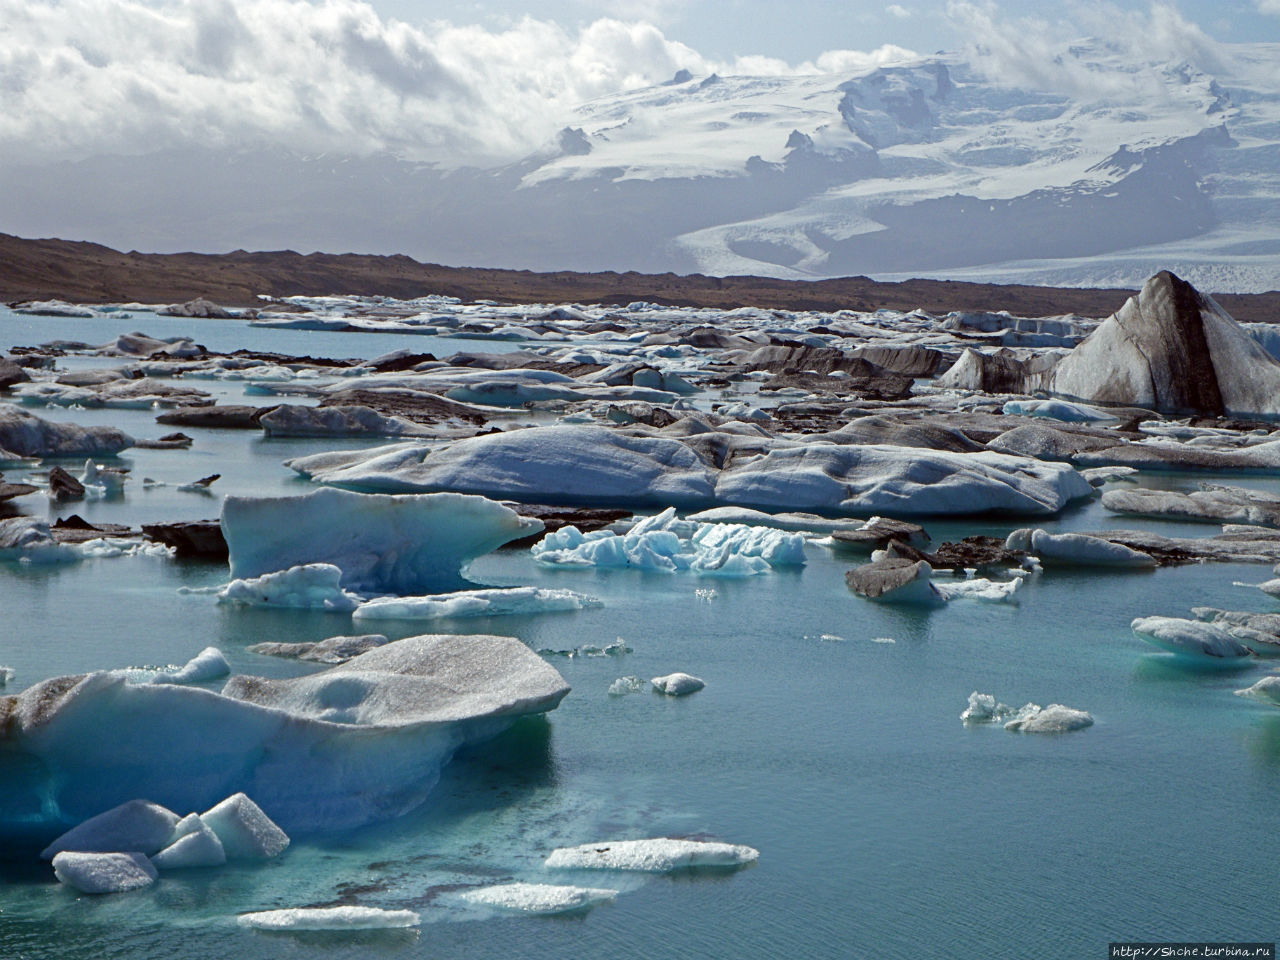 Йекюльсаурлон — исландская Антарктида в миниатюре Йёкюльсаурлоун ледниковая лагуна, Исландия